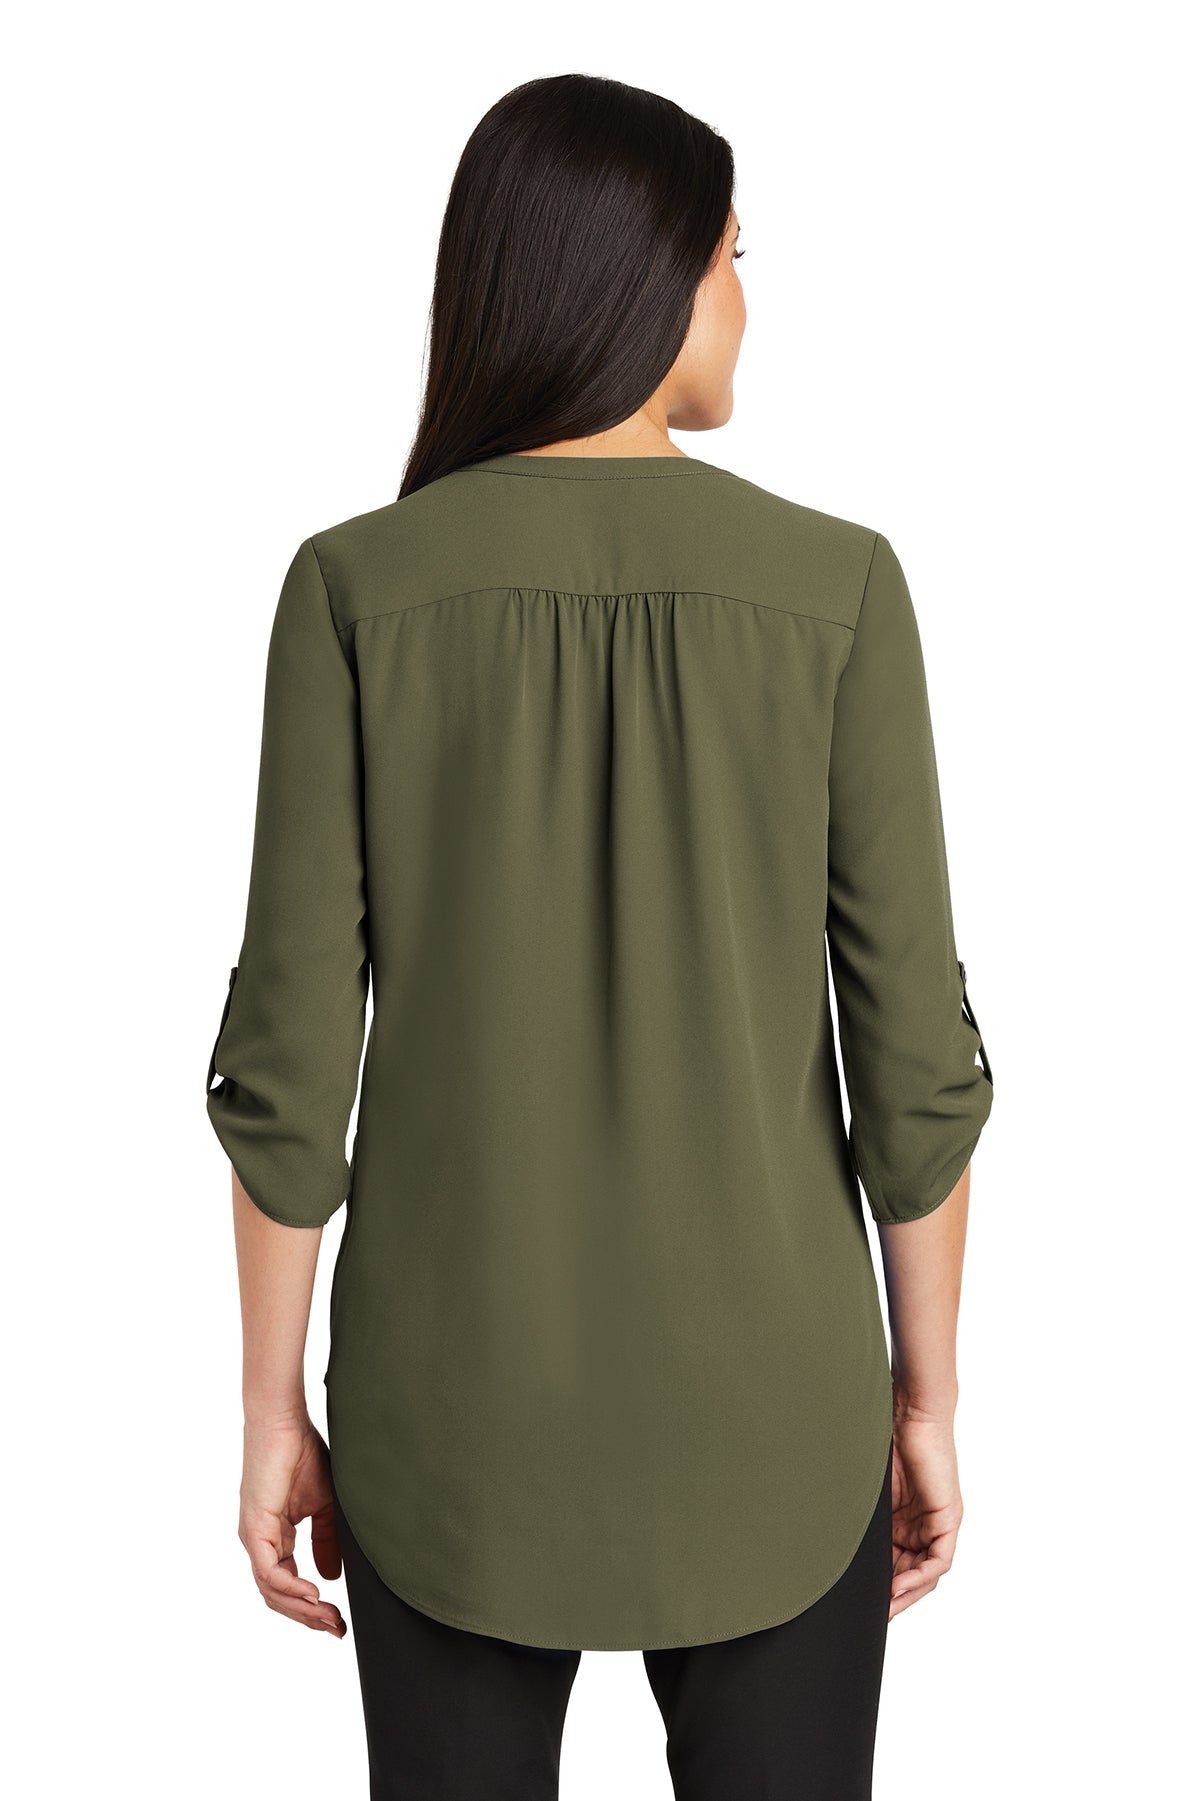 LW701 Port Authority ® Ladies 3/4-Sleeve Tunic Blouse